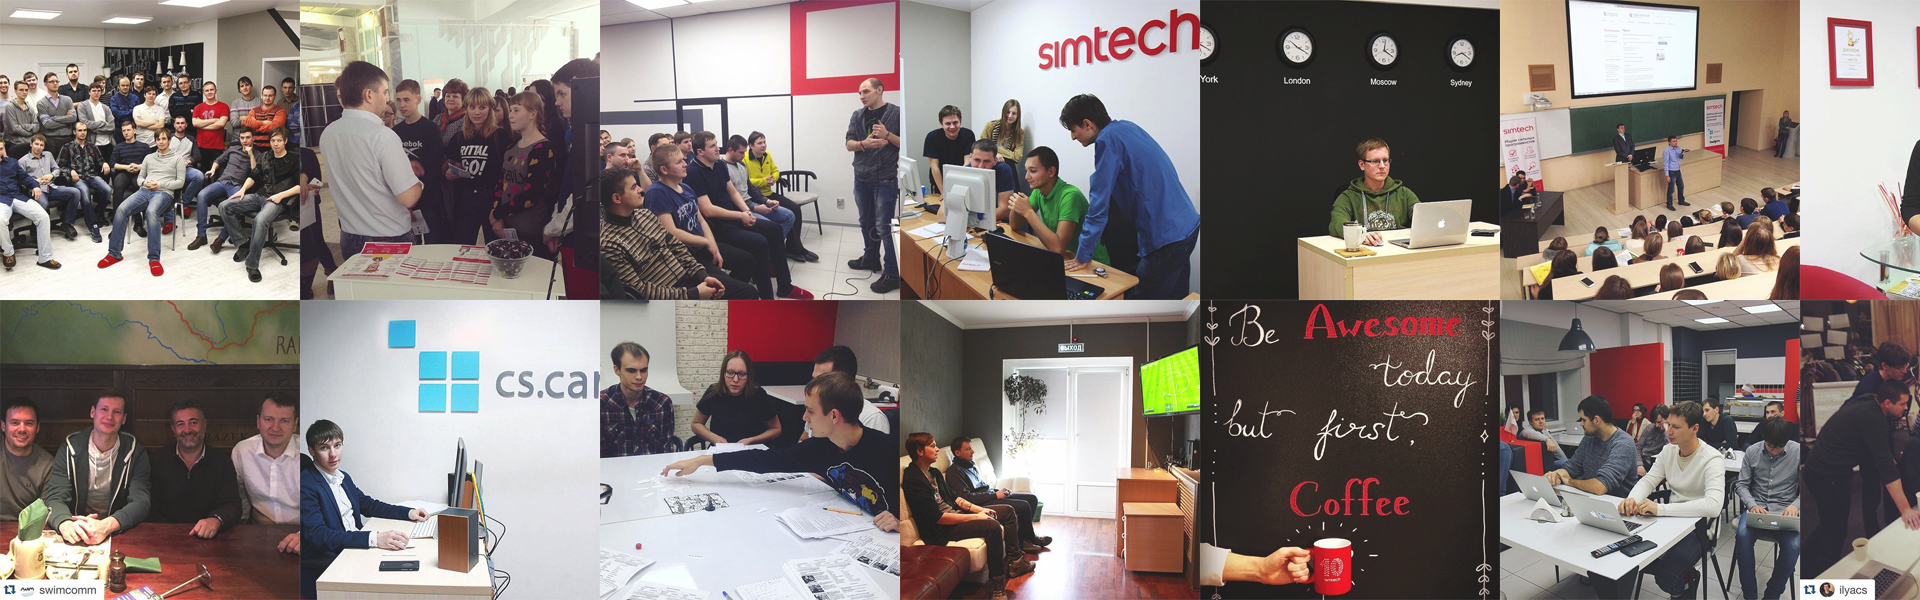 Мы (группа компаний Simtech) занимаемся разработкой решений для интернет-торговли с 2005 года